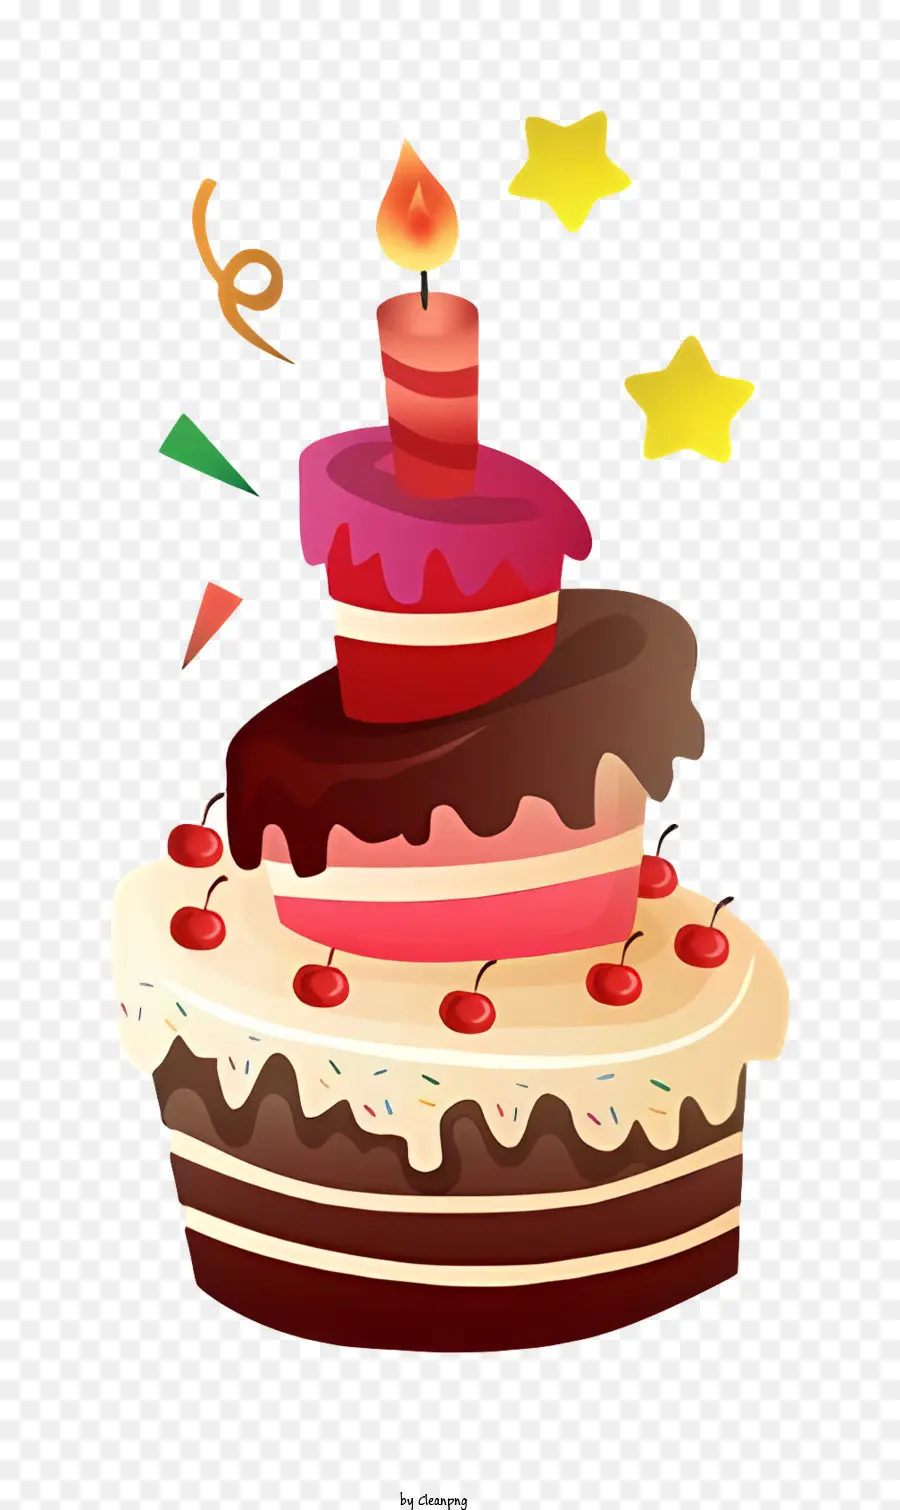 Bánh sinh nhật - Bánh sinh nhật cách điệu với nến sáng và đồ trang trí